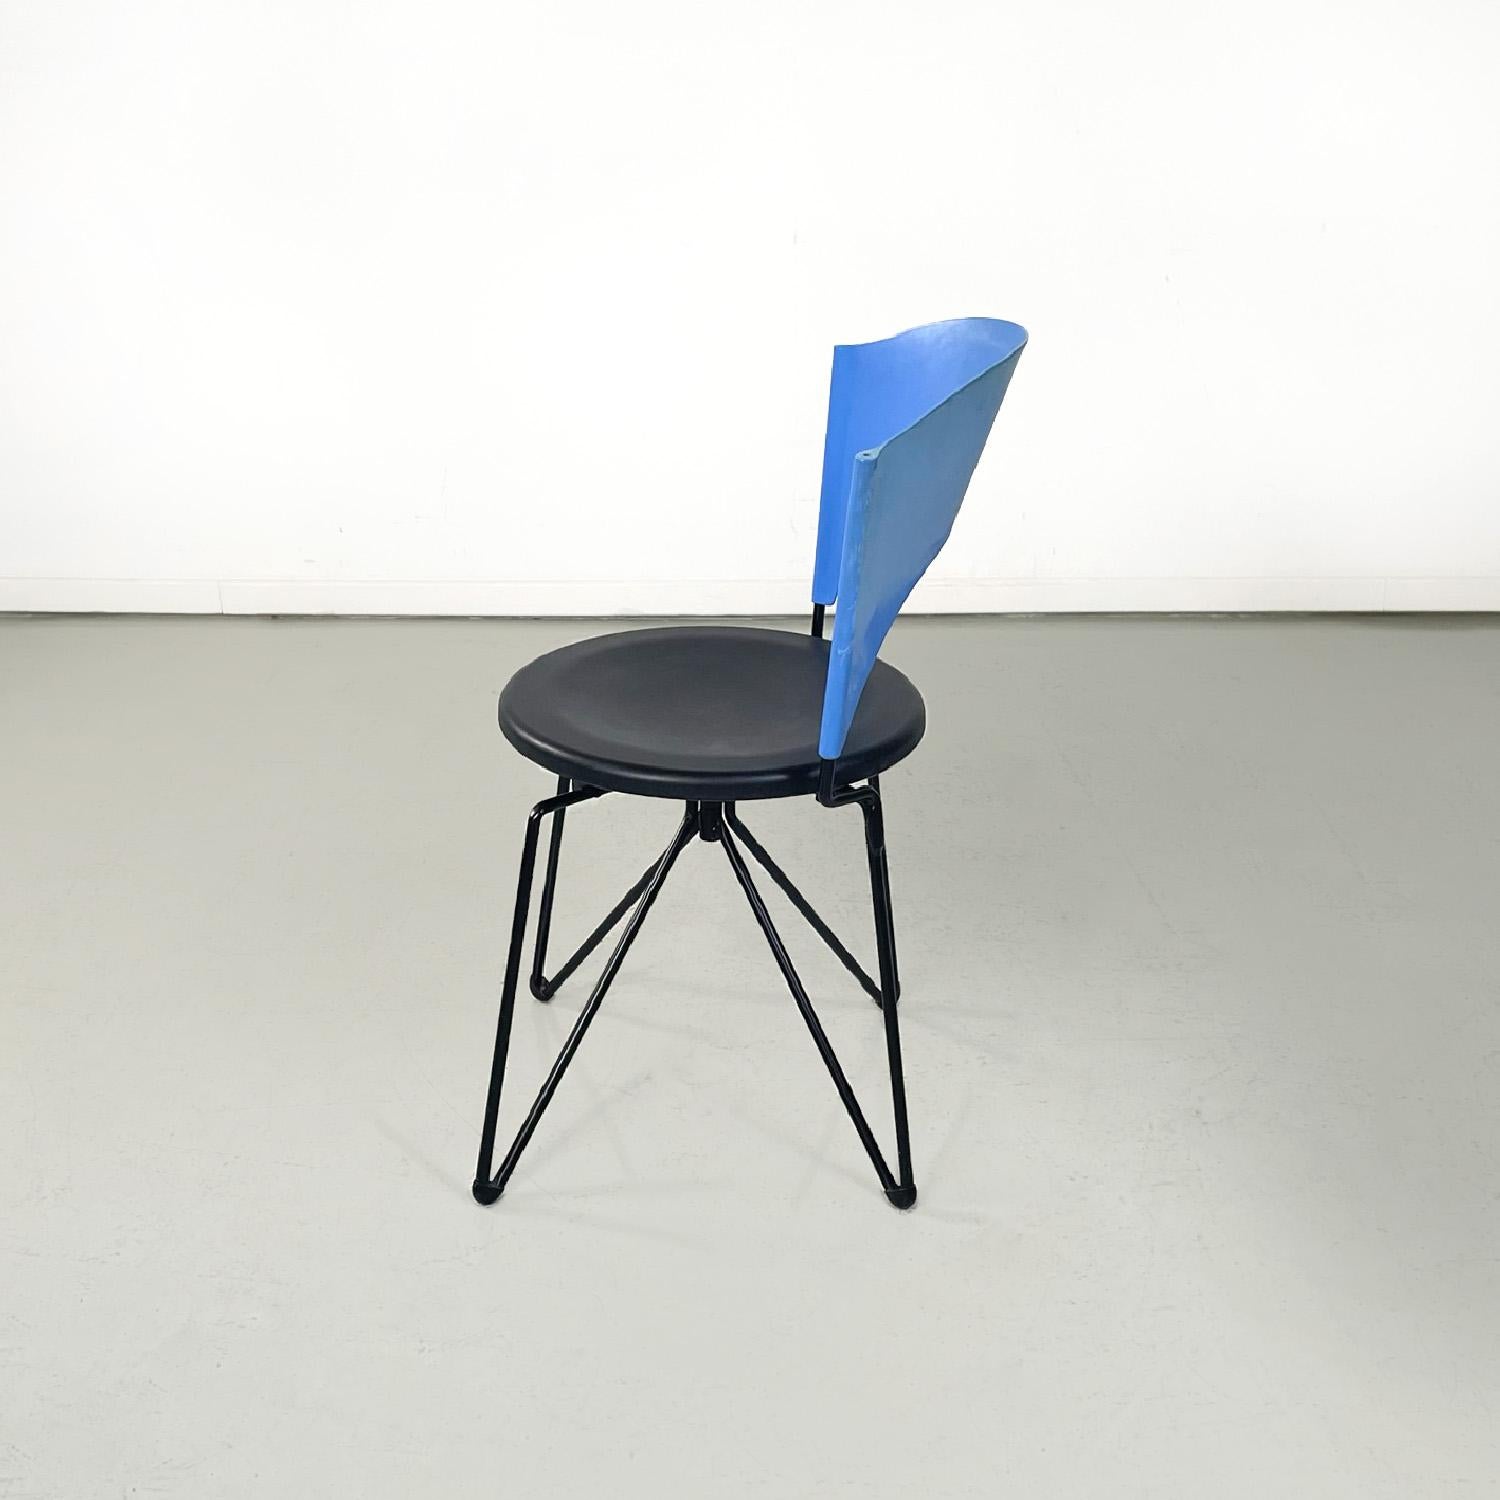 Chaise moderne italienne noire et bleue Sofia par Carlo Bartoli pour Bonaldi, années 1980
Chaise pliante mod. Sofia avec structure en tige métallique peinte en noir. L'assise ronde est en plastique noir, le dossier est en plastique bleu clair et est